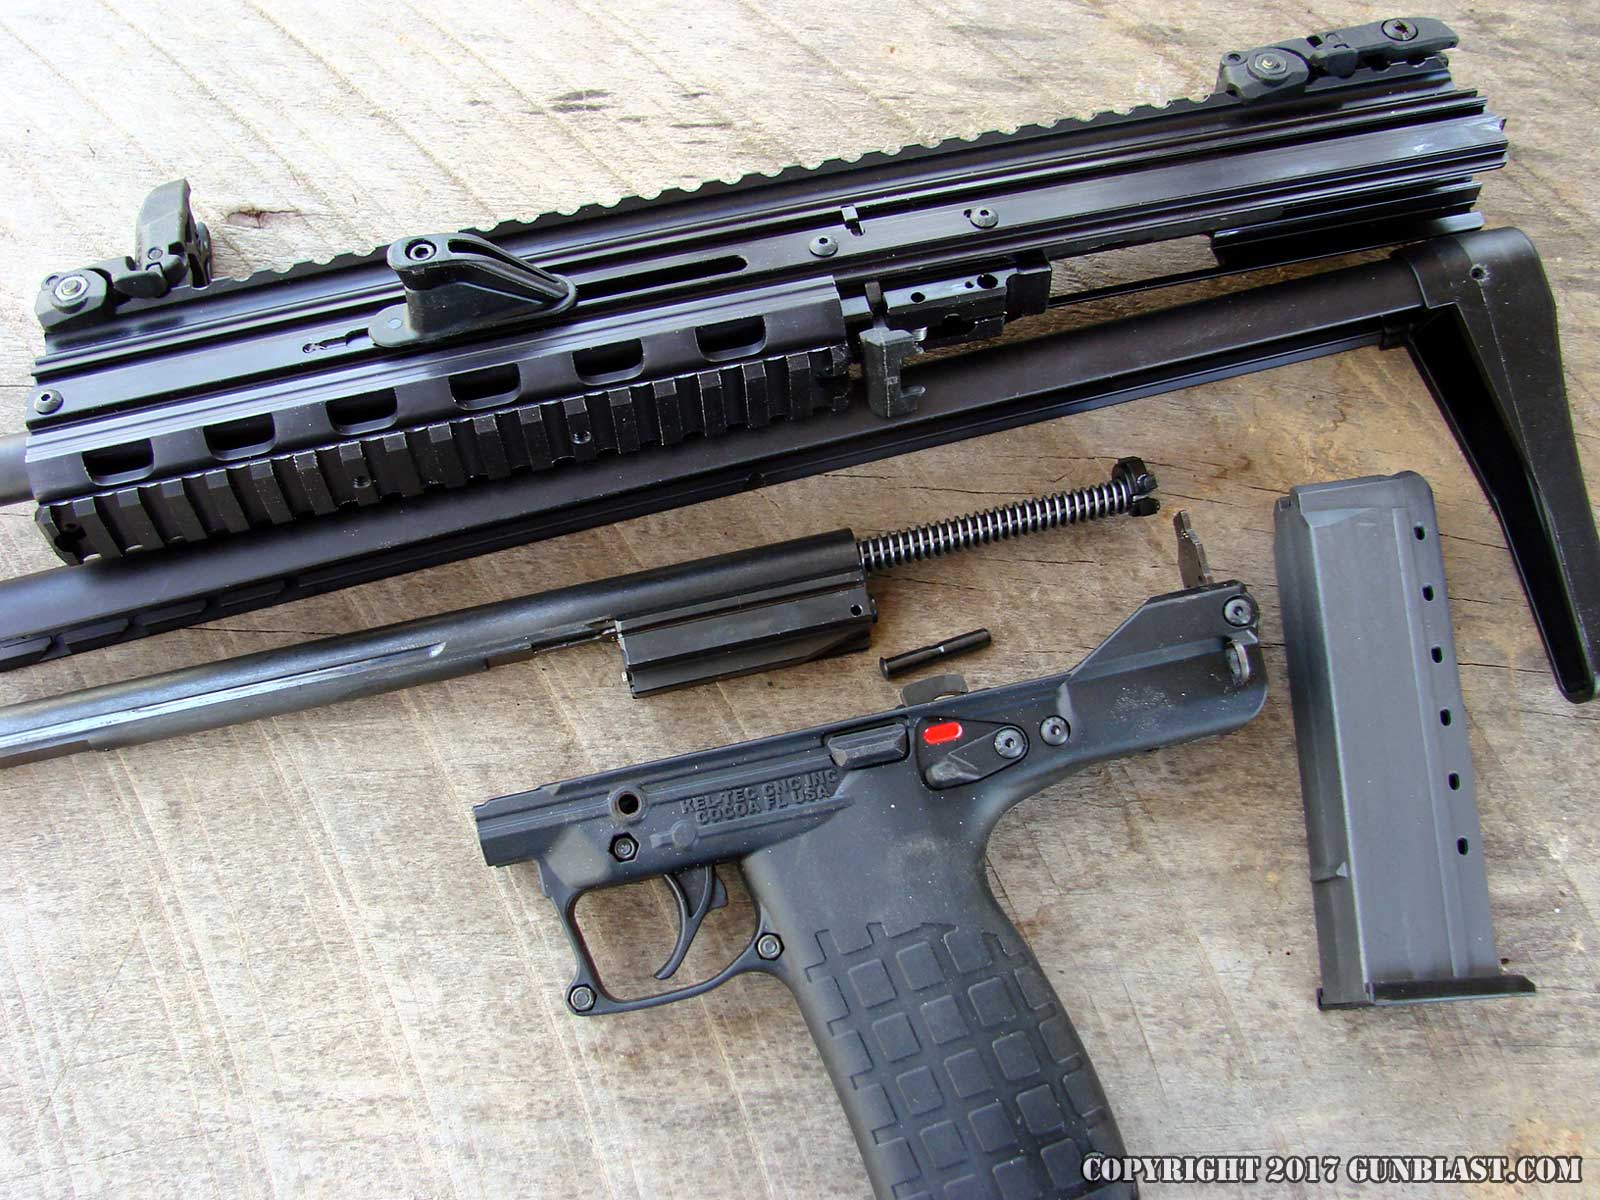 Kel-Tec CMR-30 Lightweight 22 Magnum Semi-Automatic Carbine.